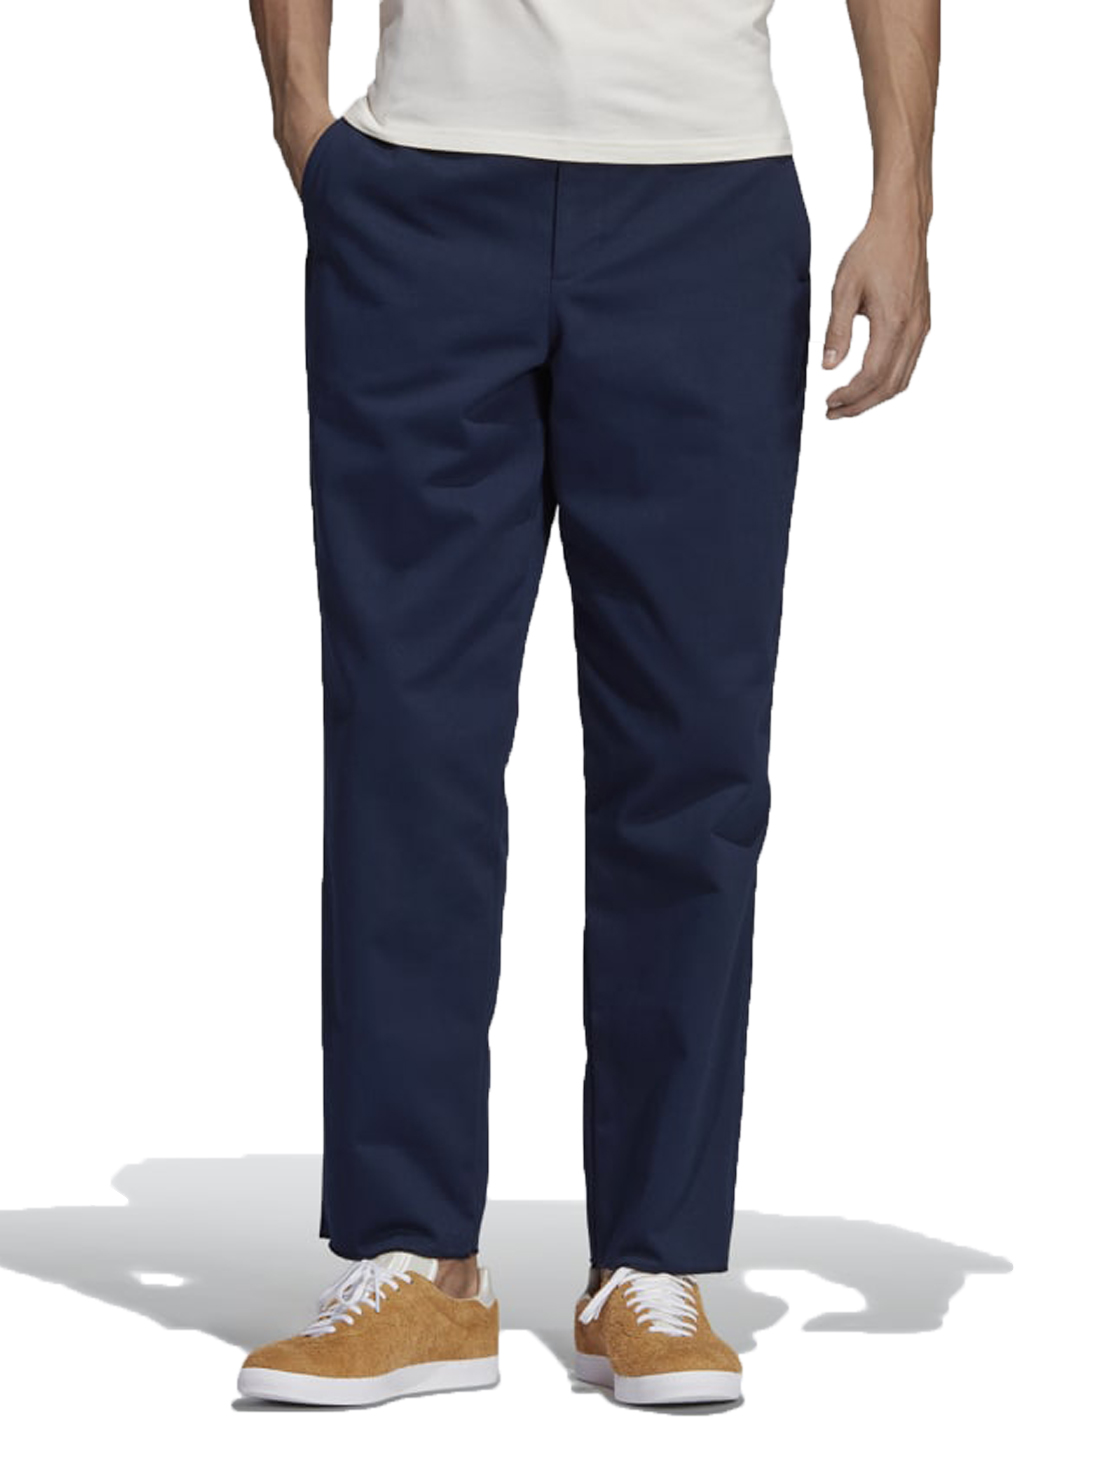 Adidas Alltimers Chino Pants - Navy 